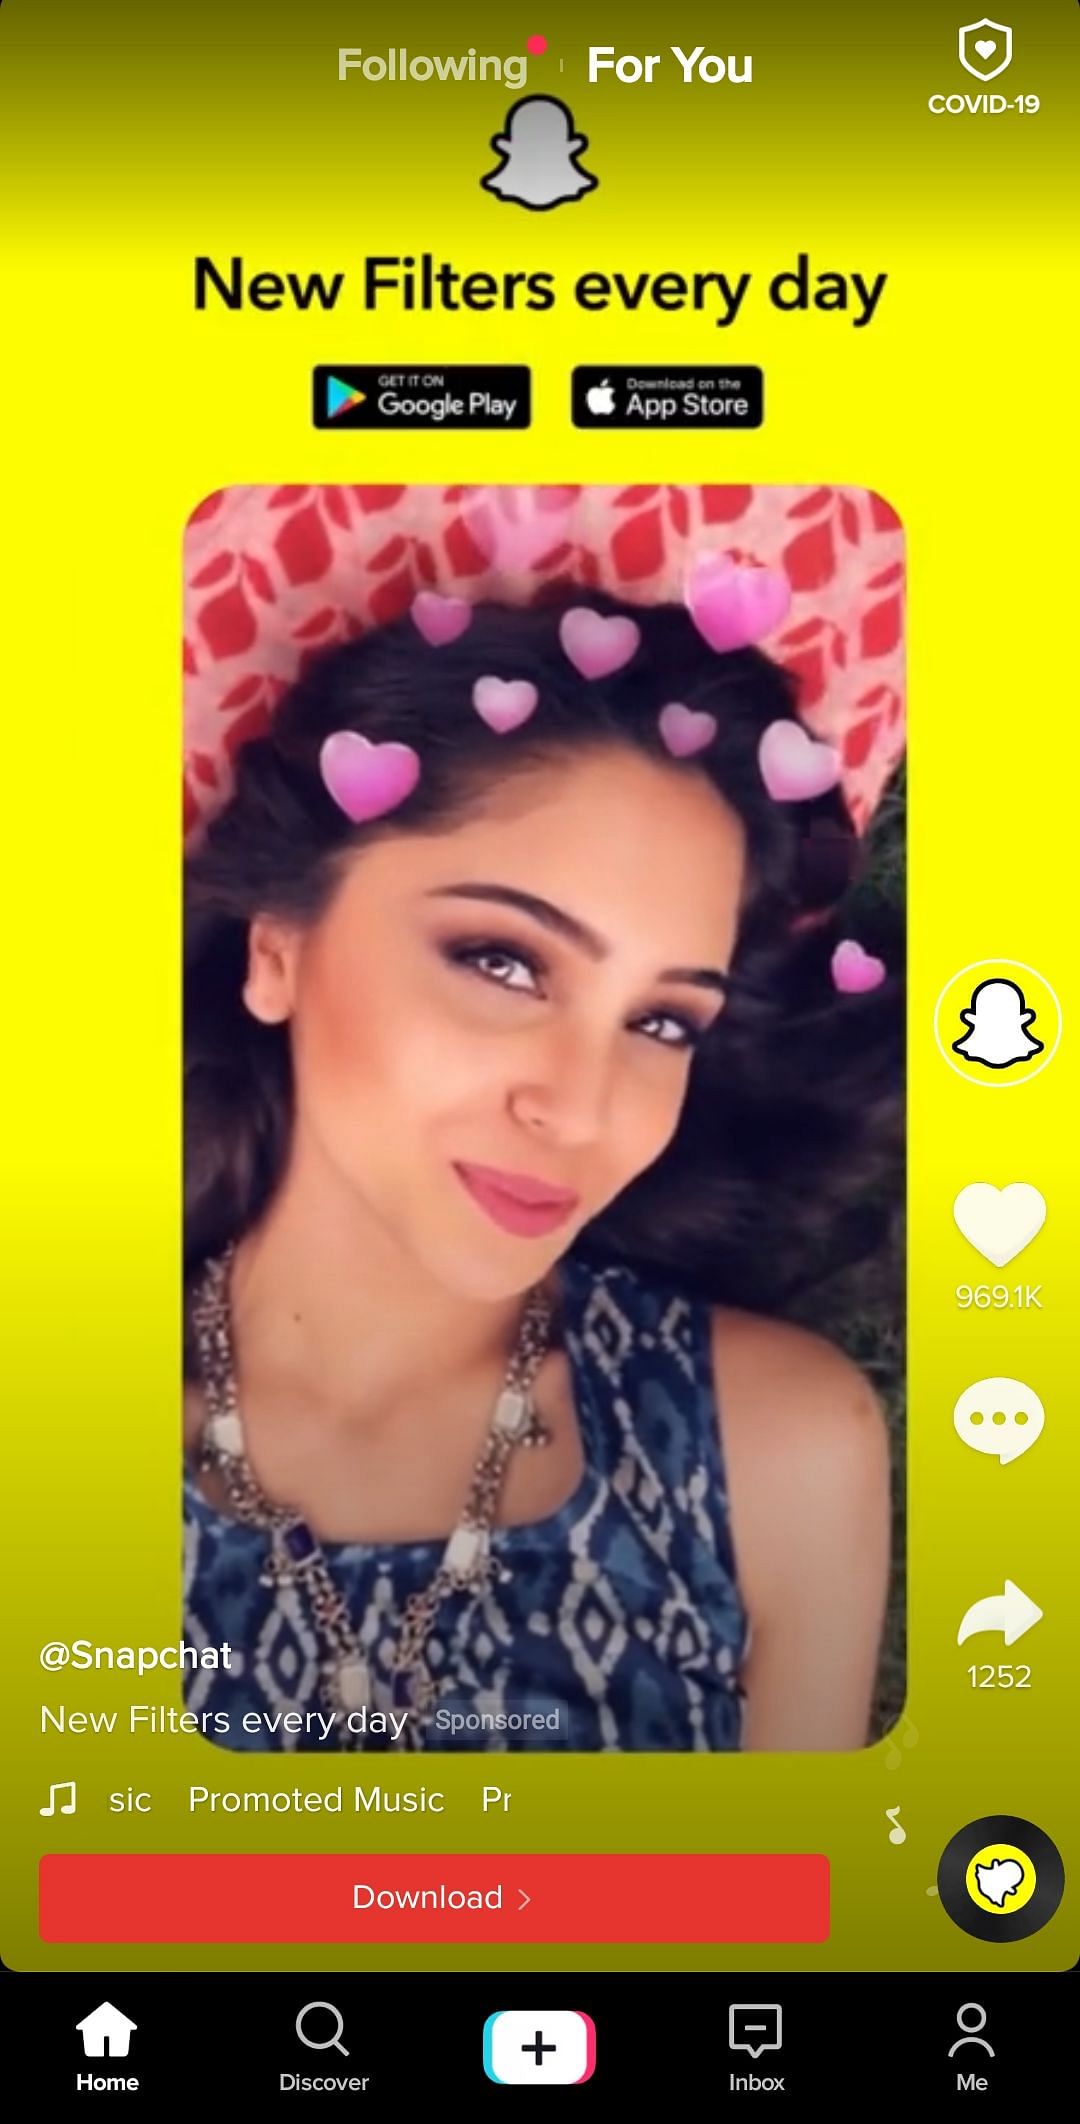 Snapchat ad on TikTok